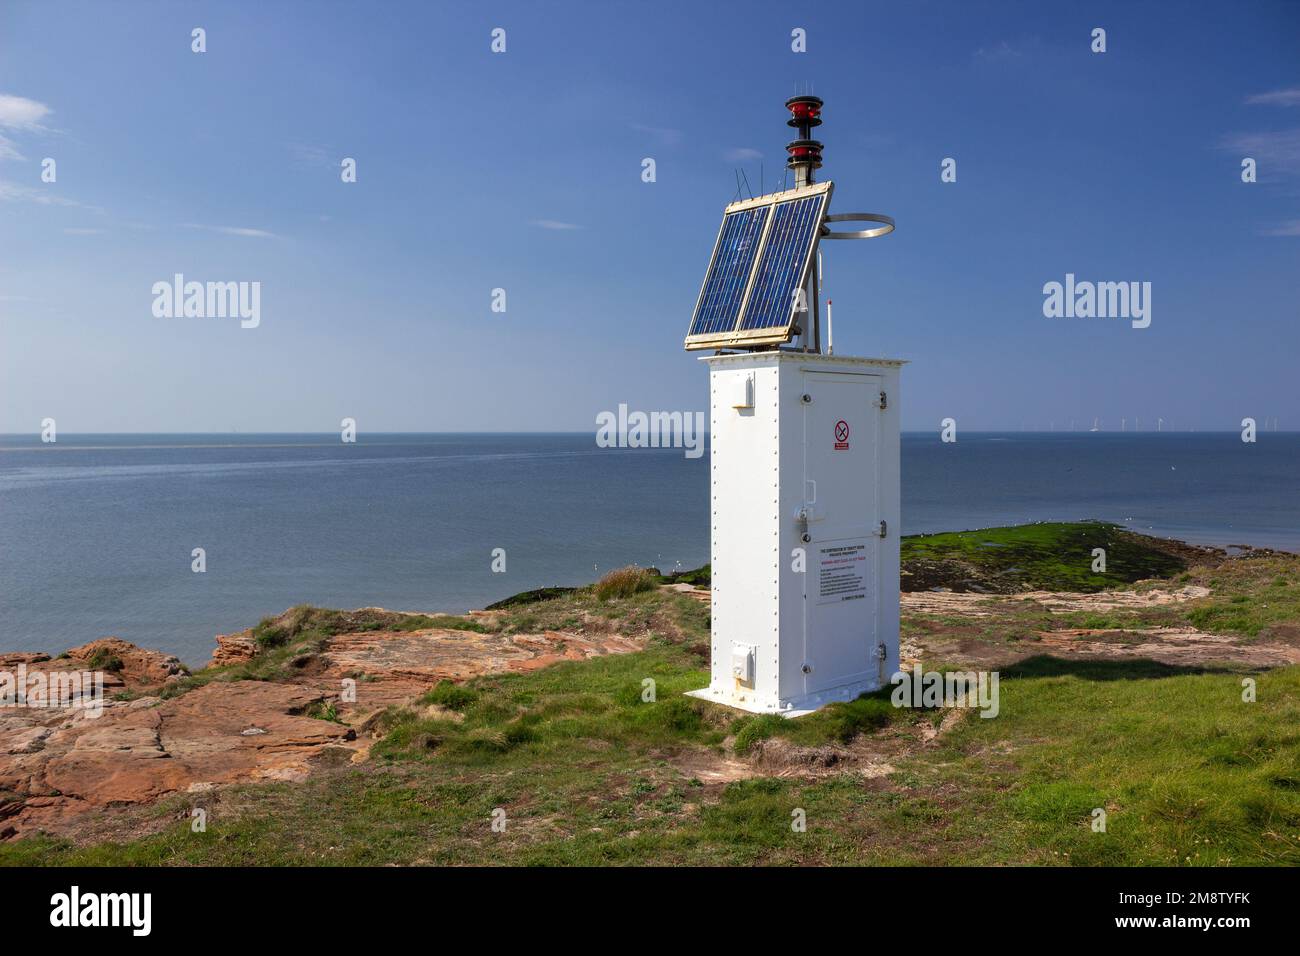 Hilbre Island, Regno Unito: Faro a energia solare, un faro di navigazione alto tre metri, gestito da Trinity House. Foto Stock